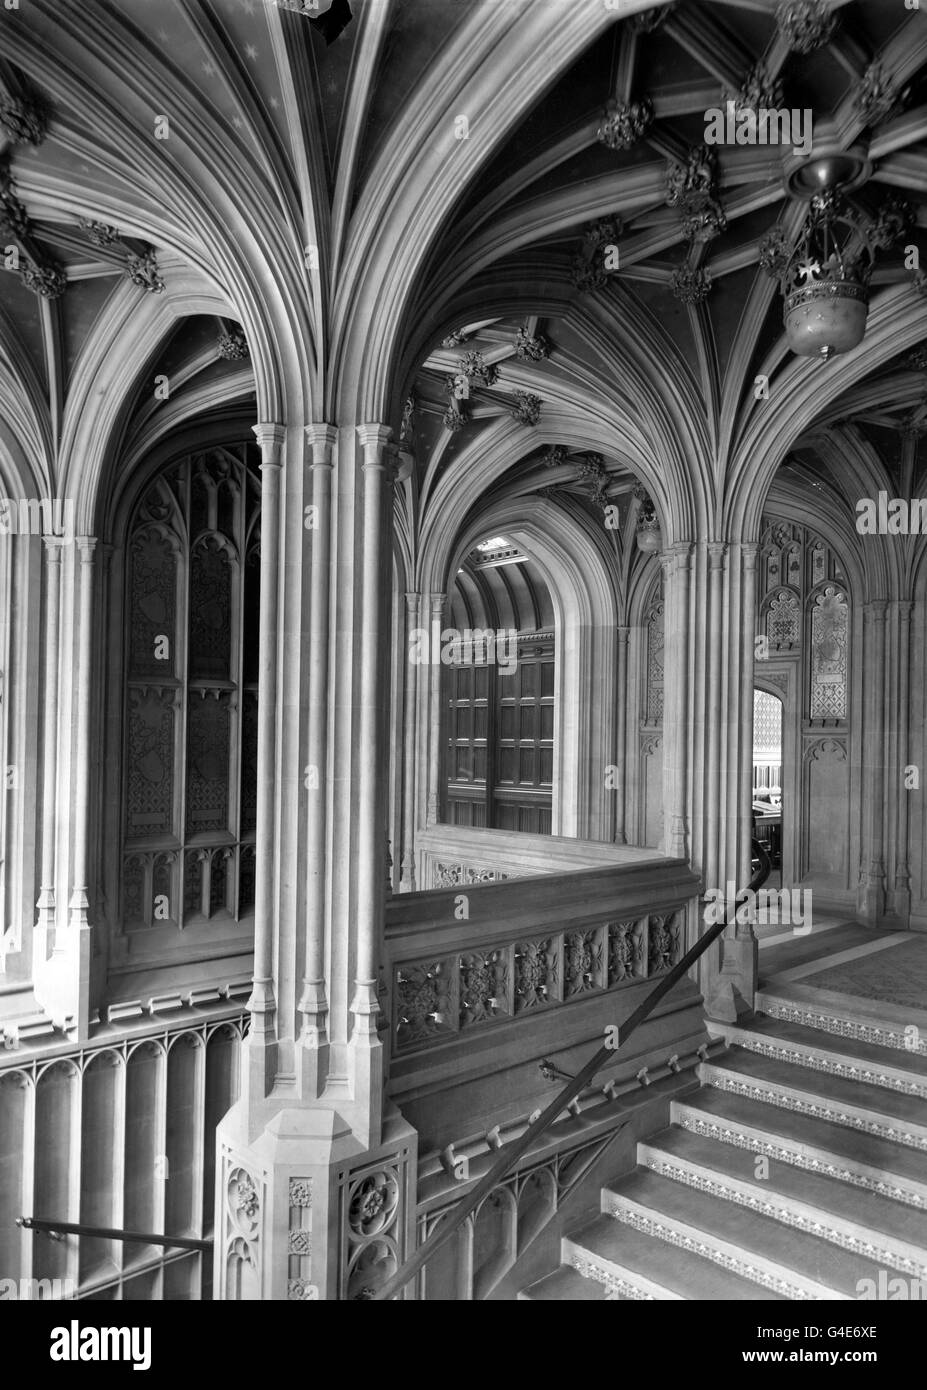 Bâtiments et monuments - chambres du Parlement - Londres.Un escalier à la Chambre des Lords, aux chambres du Parlement Banque D'Images